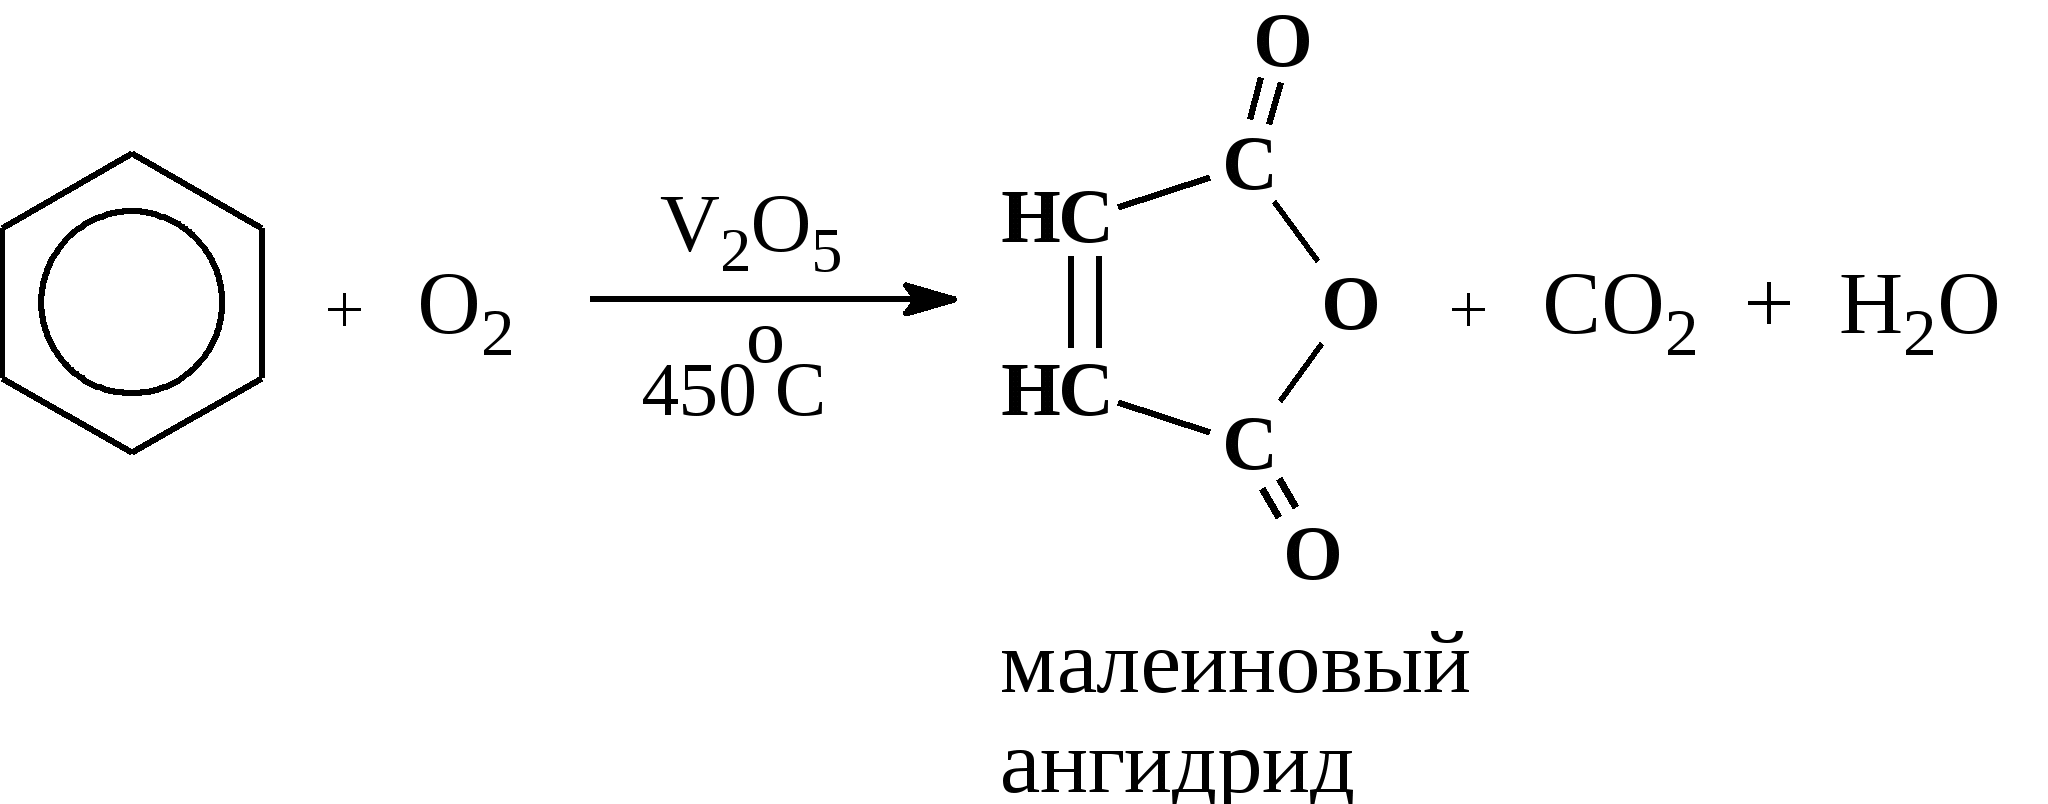 Каталитическое окисление бензола кислородом. Окисление бензола v2o5. Окисление бензола кислородом при катализаторе v2o5. Каталитическое окисление метилбензола. Бензол горит